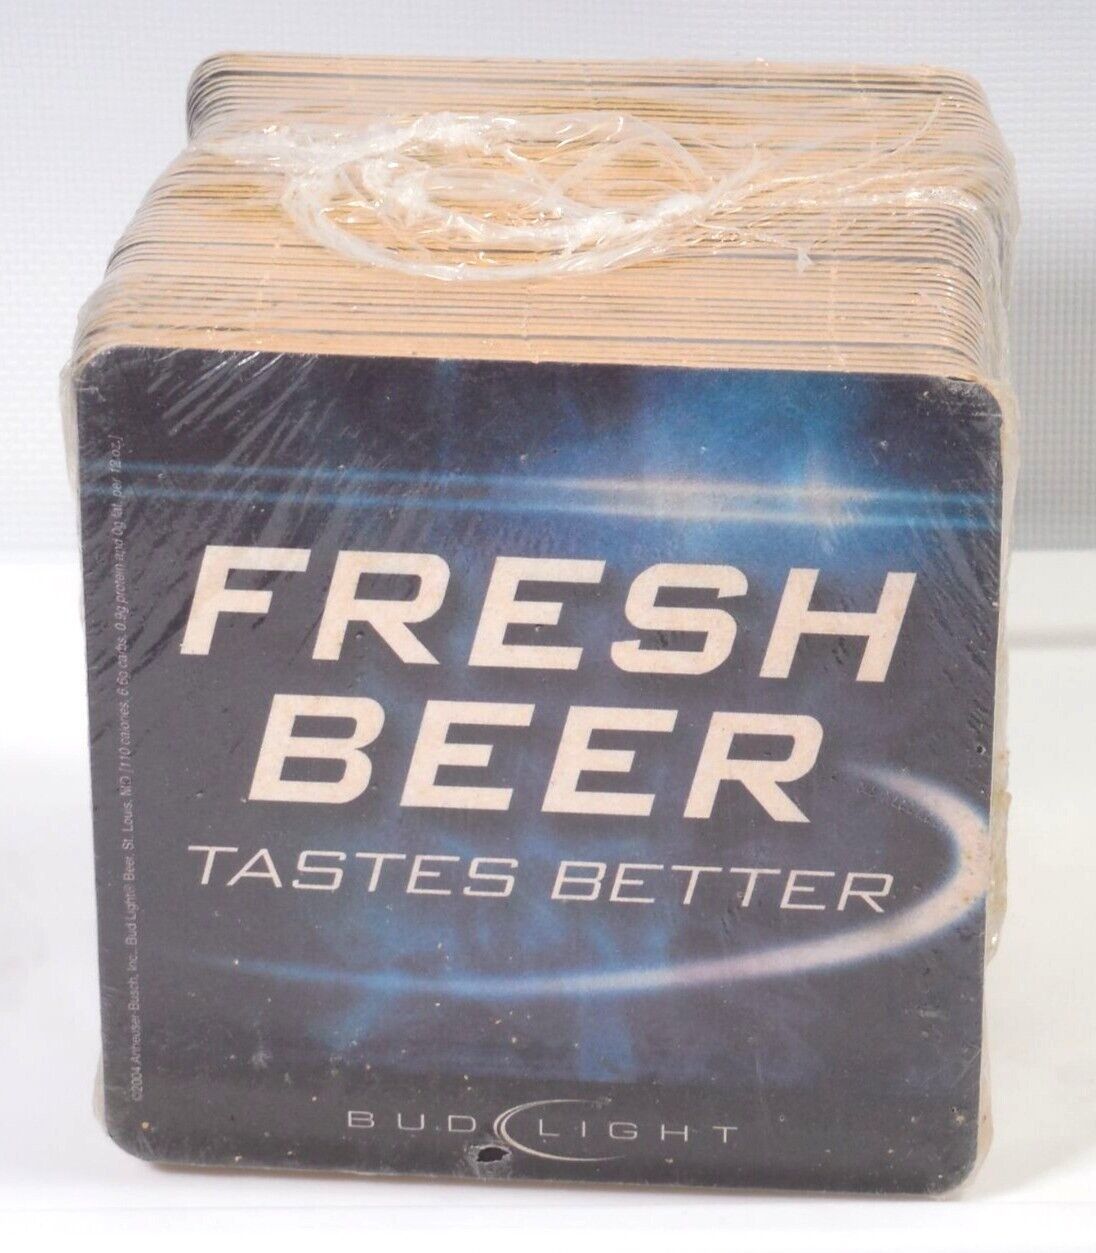 Anheuser Busch Fresh Beer Tastes Better Bud Light Beer Coaster sealed 50 pack 20 - $11.65